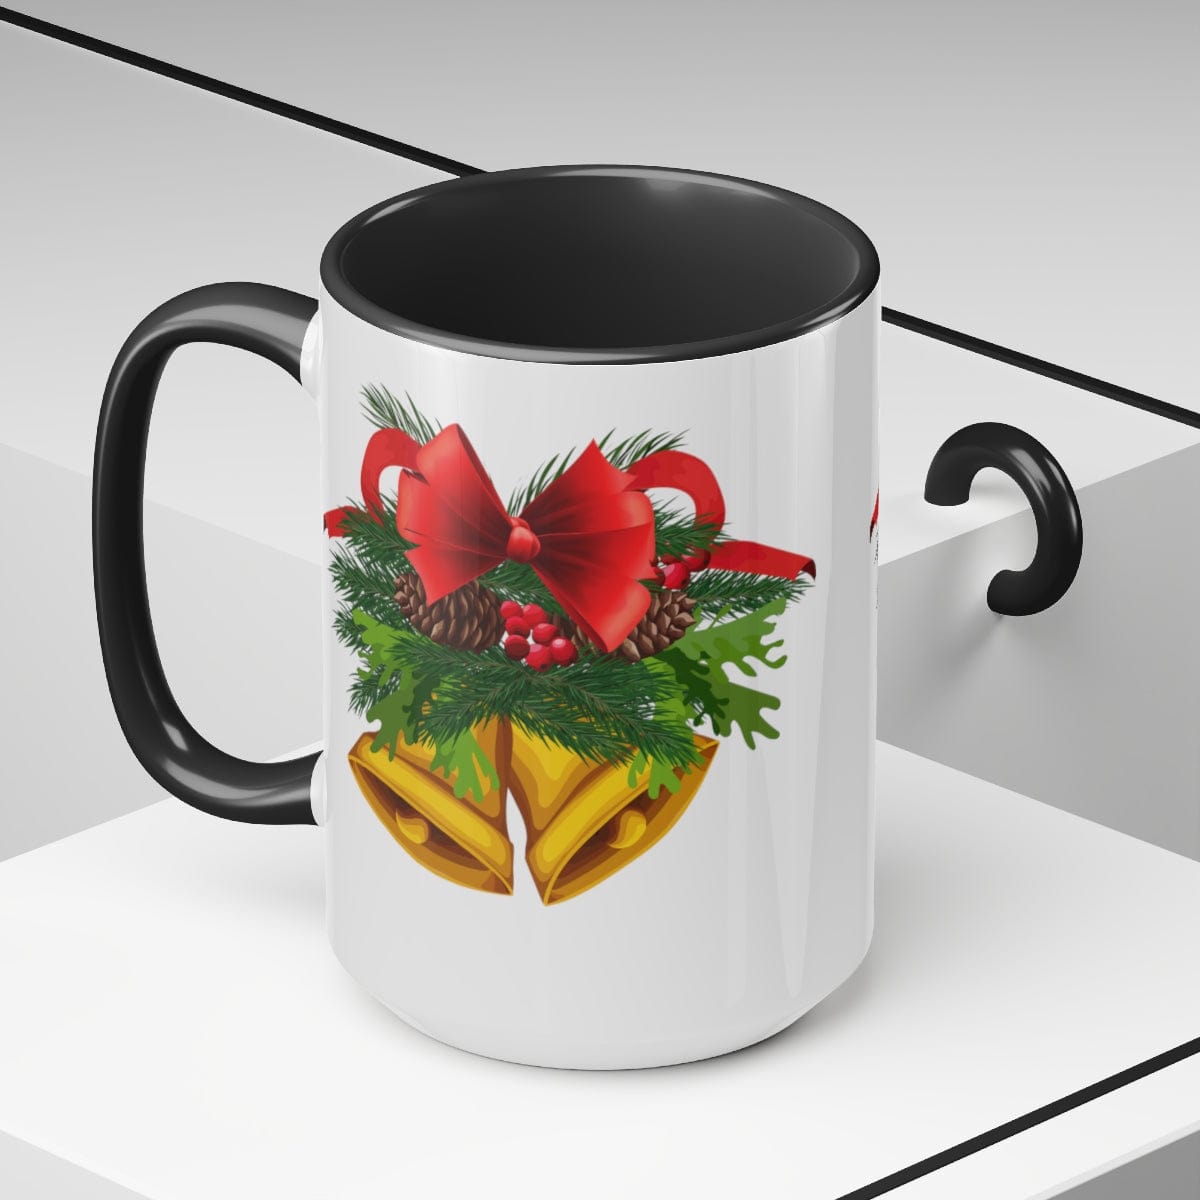 Bells of Christmas Coffee Mug - Home Decor - Gift for Holidays - 15 oz Two-Tone Coffee Mugs